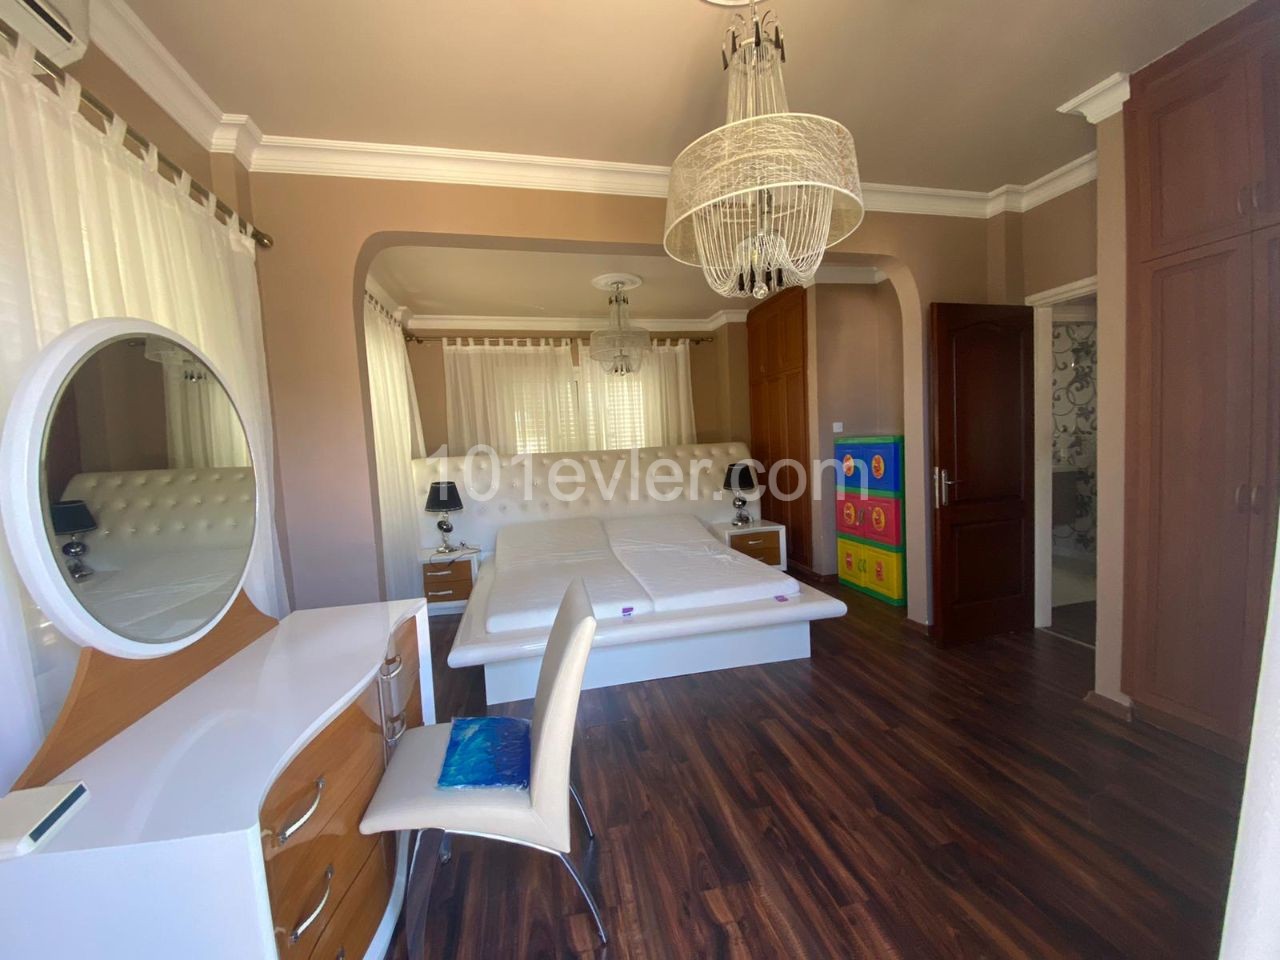 3 bedroom villa for rent in Kyrenia Center 